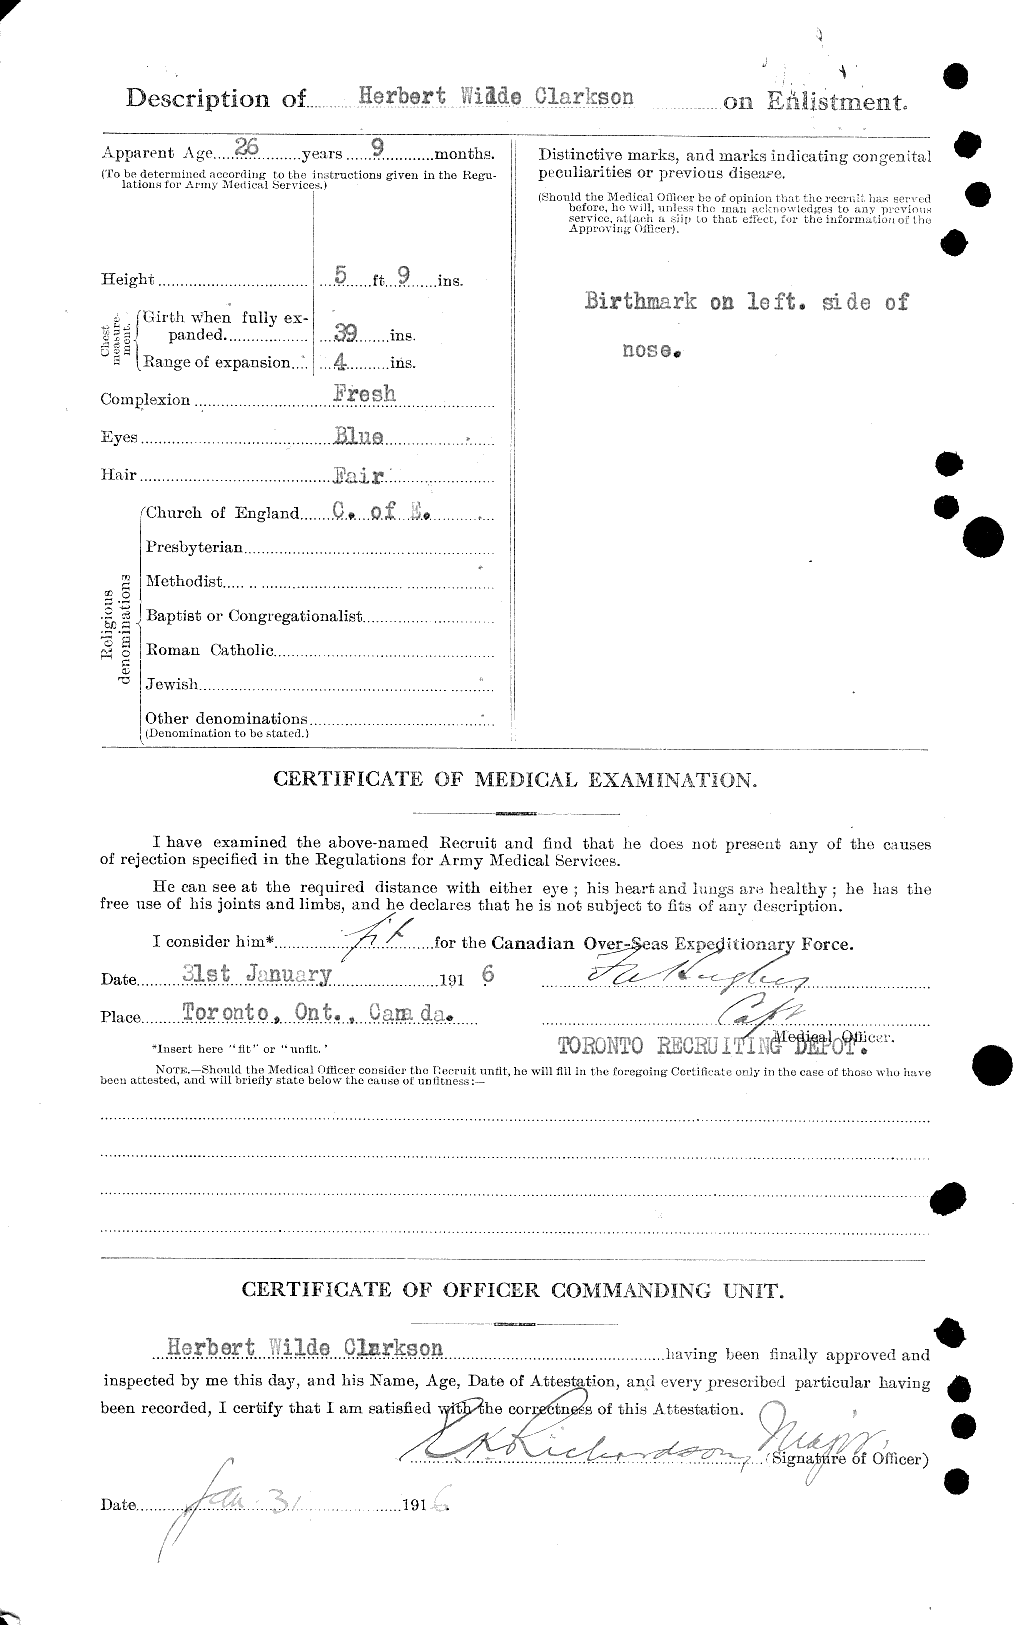 Dossiers du Personnel de la Première Guerre mondiale - CEC 021440b